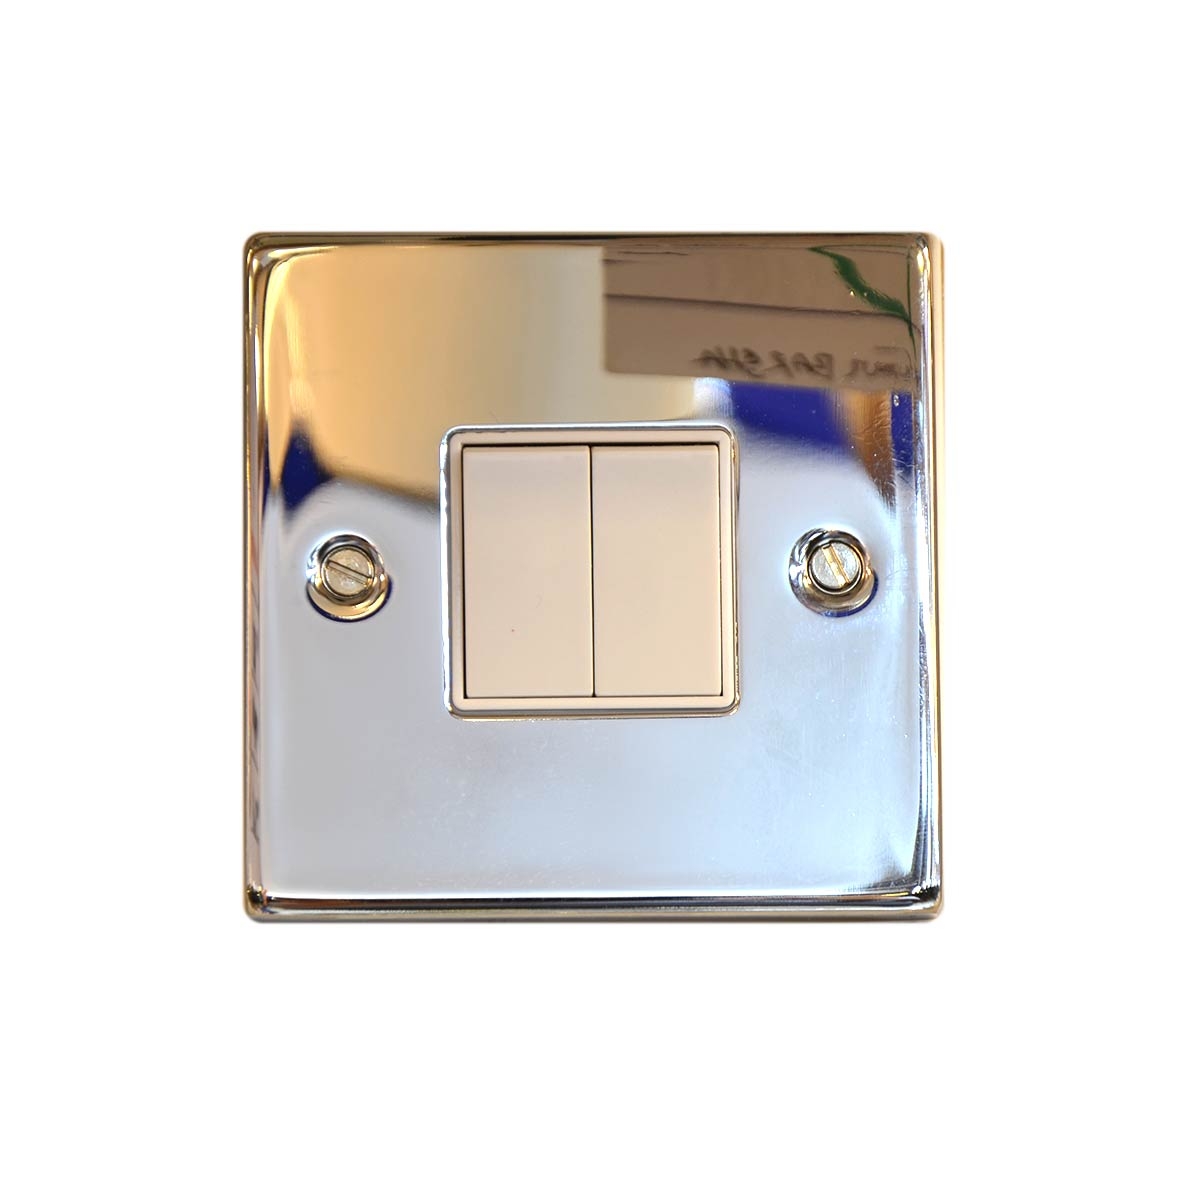 المفتاح الكهربائي - عدد الكبسات 2  - 10 أمبير - اللون فضي لامع - T304EB 